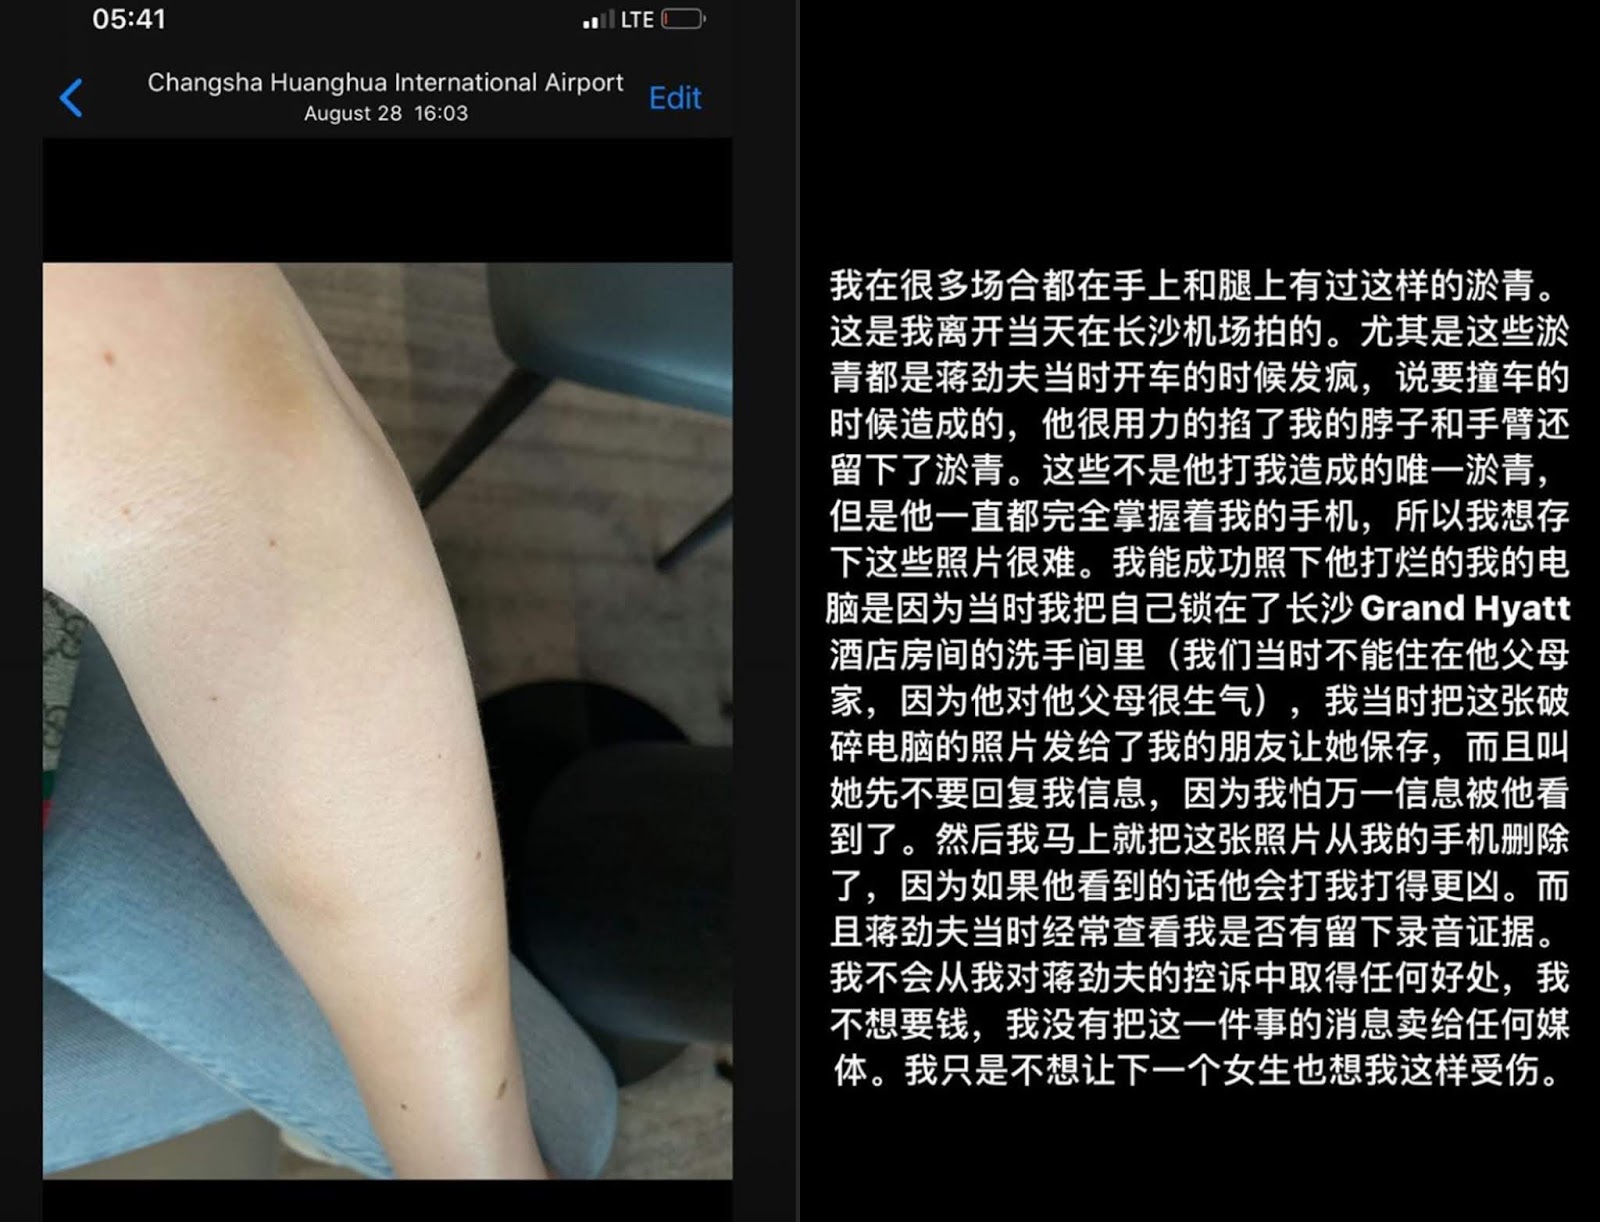 Цзян Цзинь Фу опроверг обвинения в домашнем насилии, его бывшая девушка стоит на своём